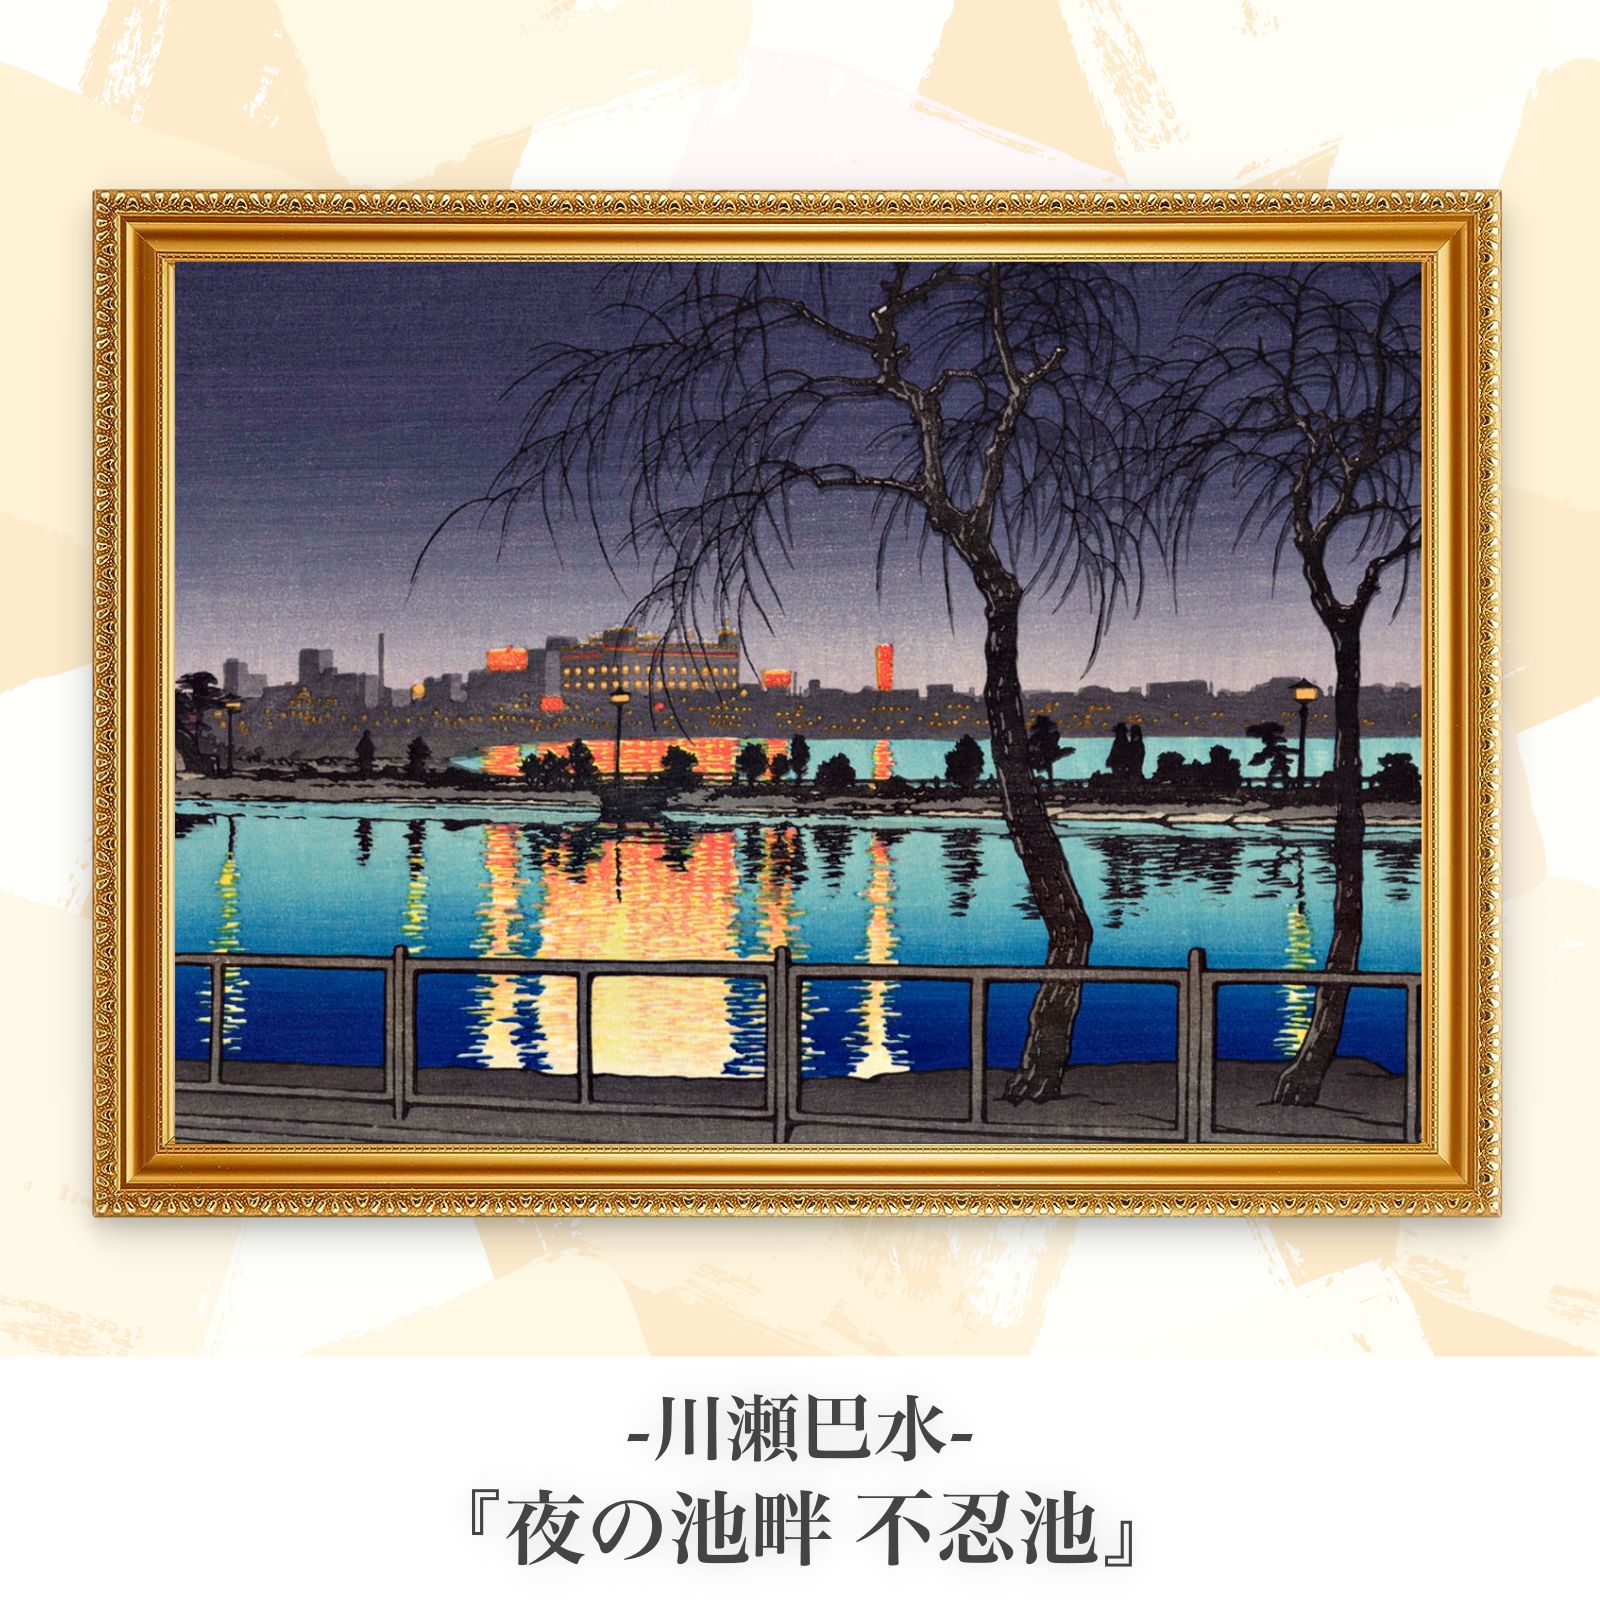 川瀬巴水『夜の池畔 不忍池』複製画【額入り.A3サイズ】⁠ - メルカリ